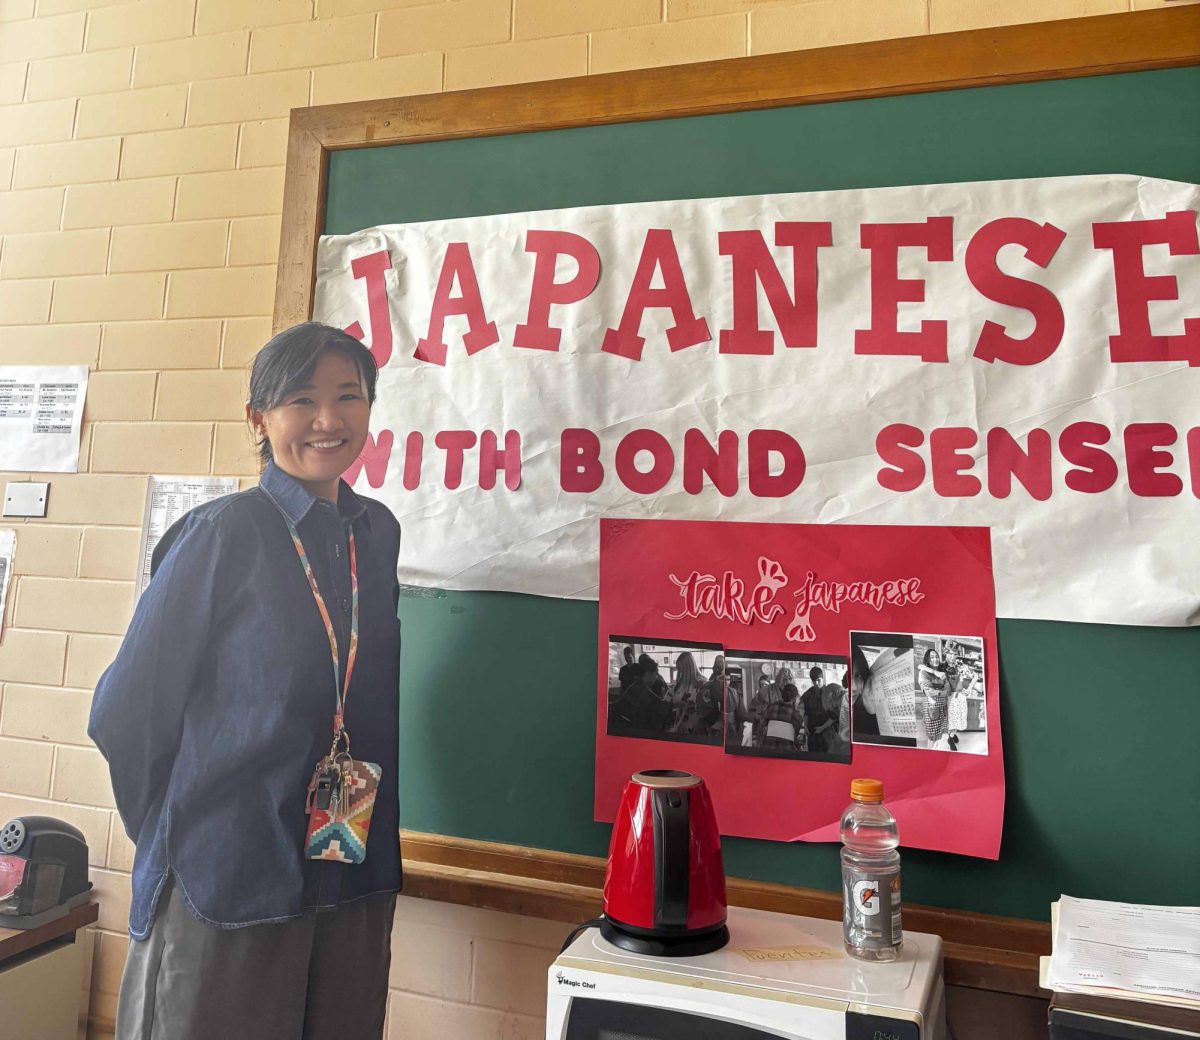 Bond Sensei, que se muestra aquí posando frente a su cartel para su clase de japonés, cree que las resoluciones son beneficiosas. Creo que es útil, dijo Bond. “Sin una meta no vas a ninguna parte; el objetivo es importante.”